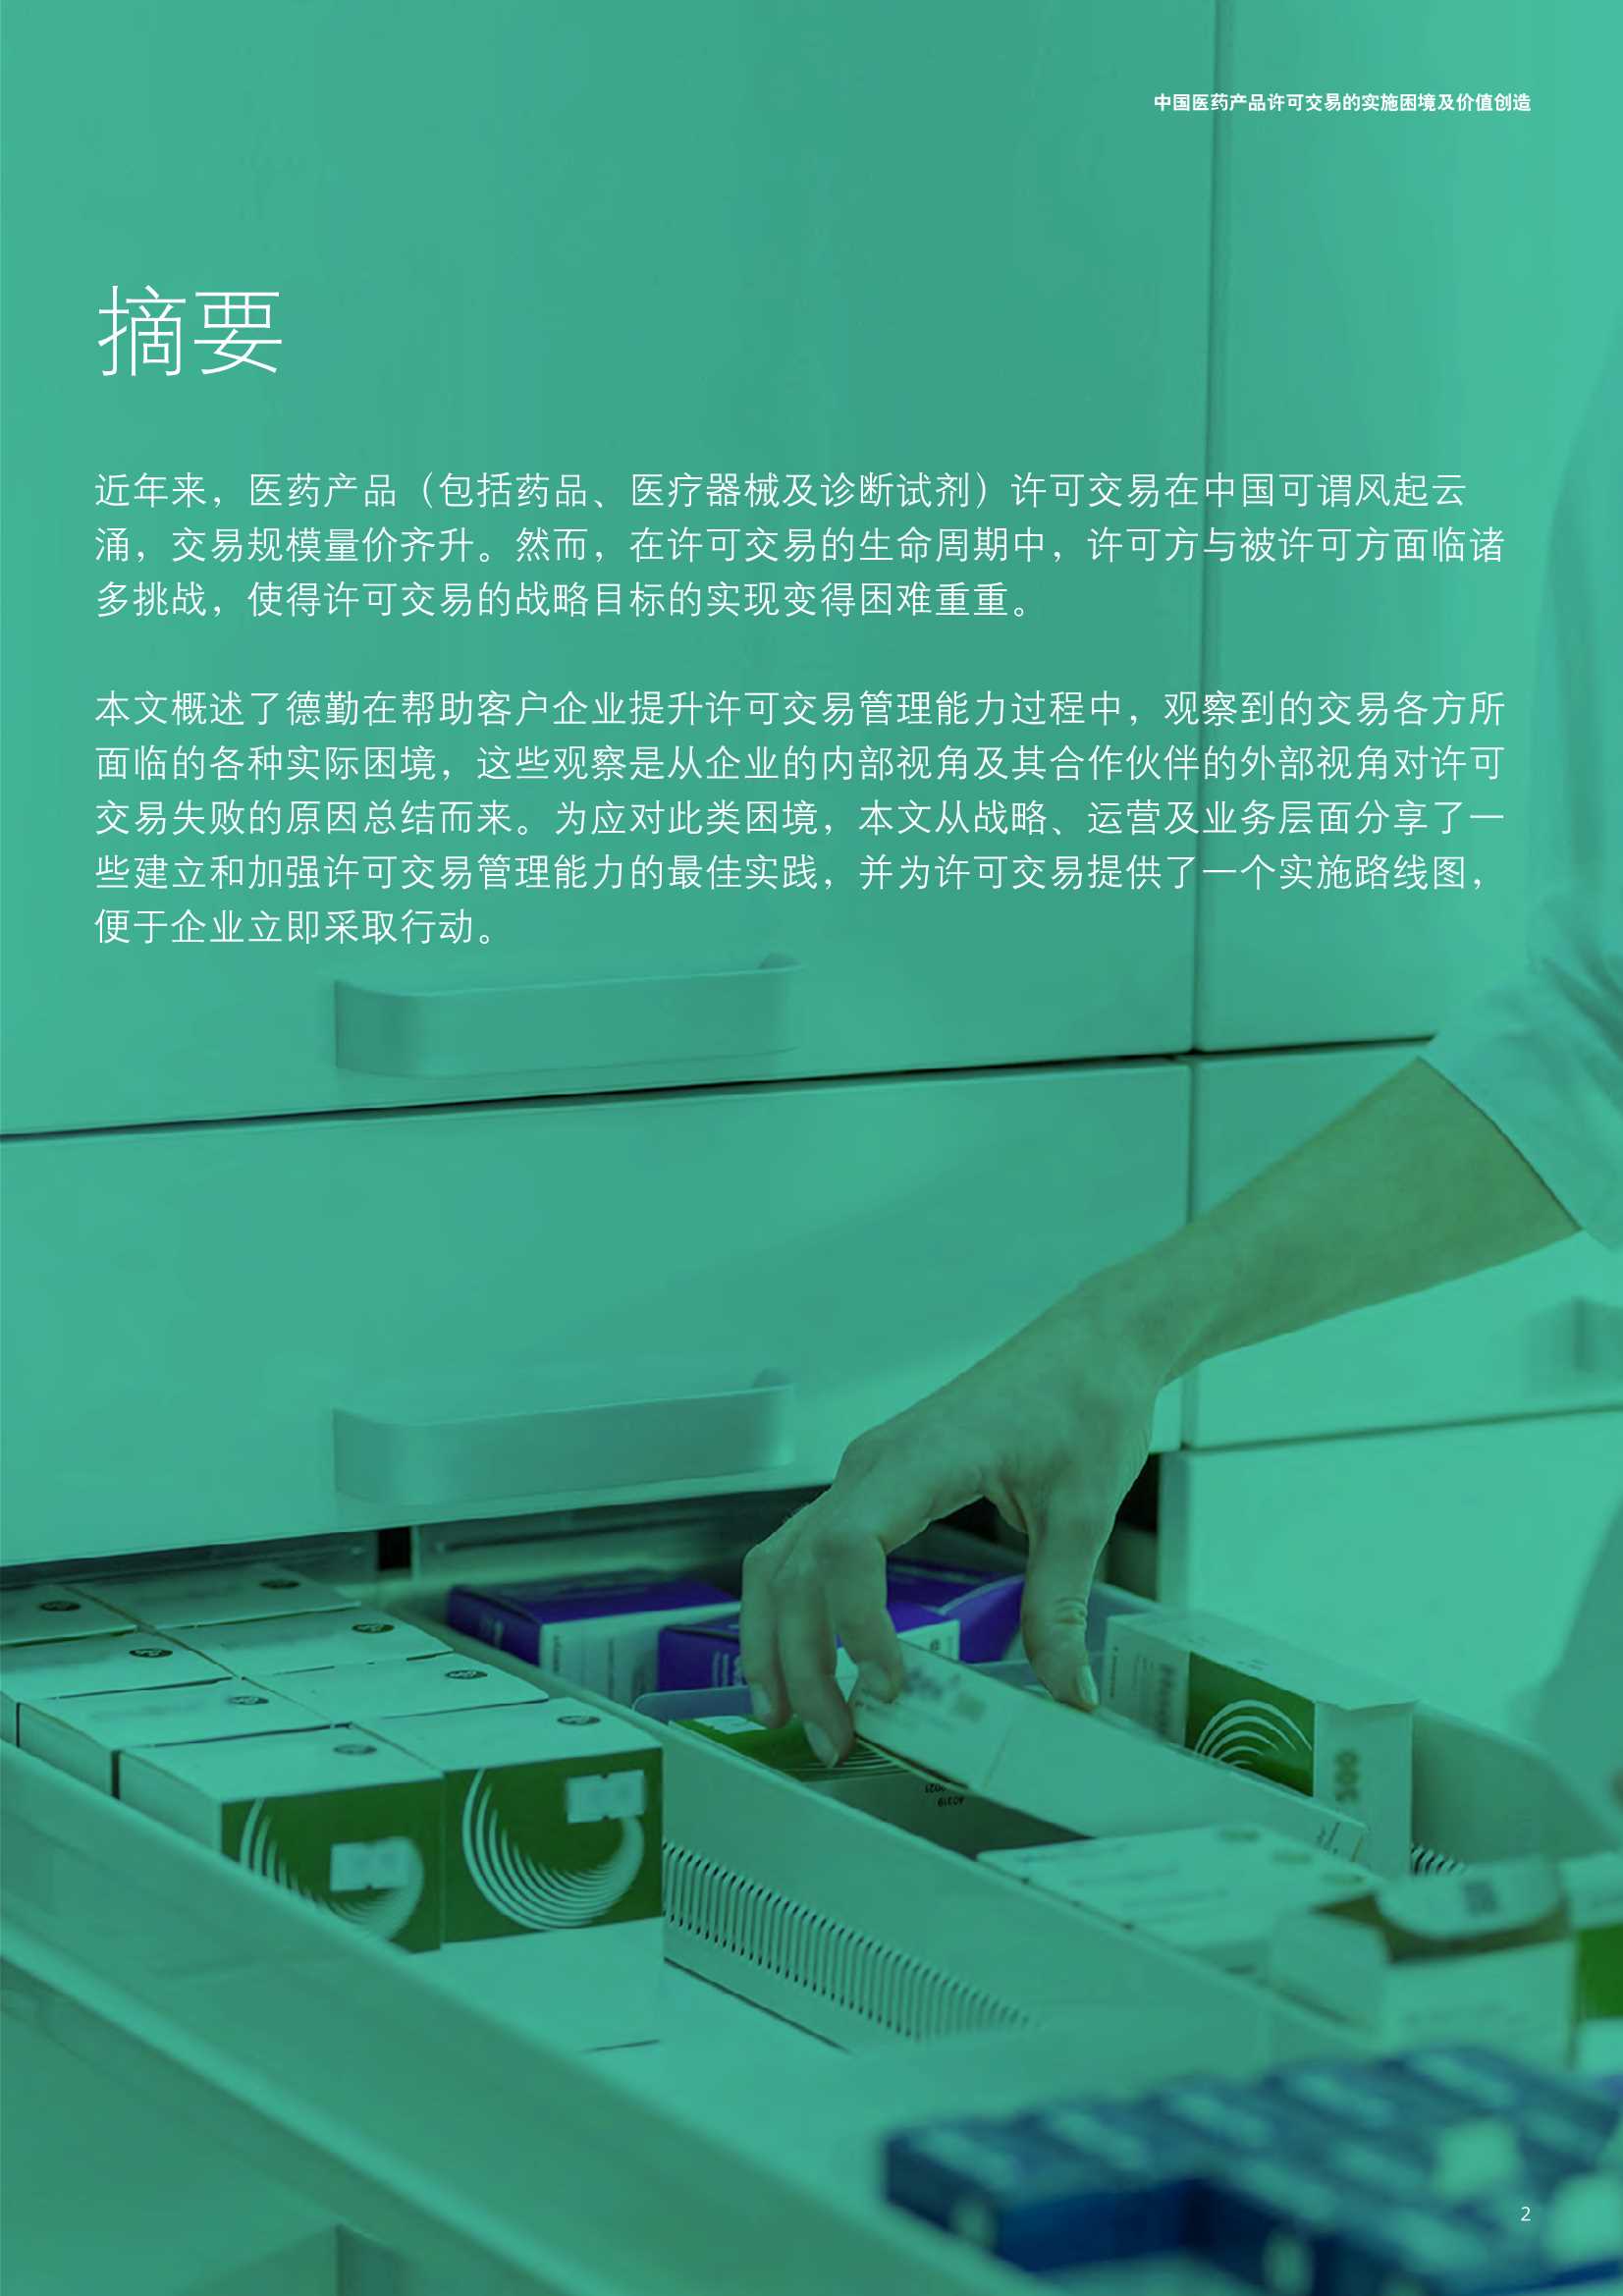 德勤-中国医药产品许可交易的实施困境及价值创造-2022.05-16页